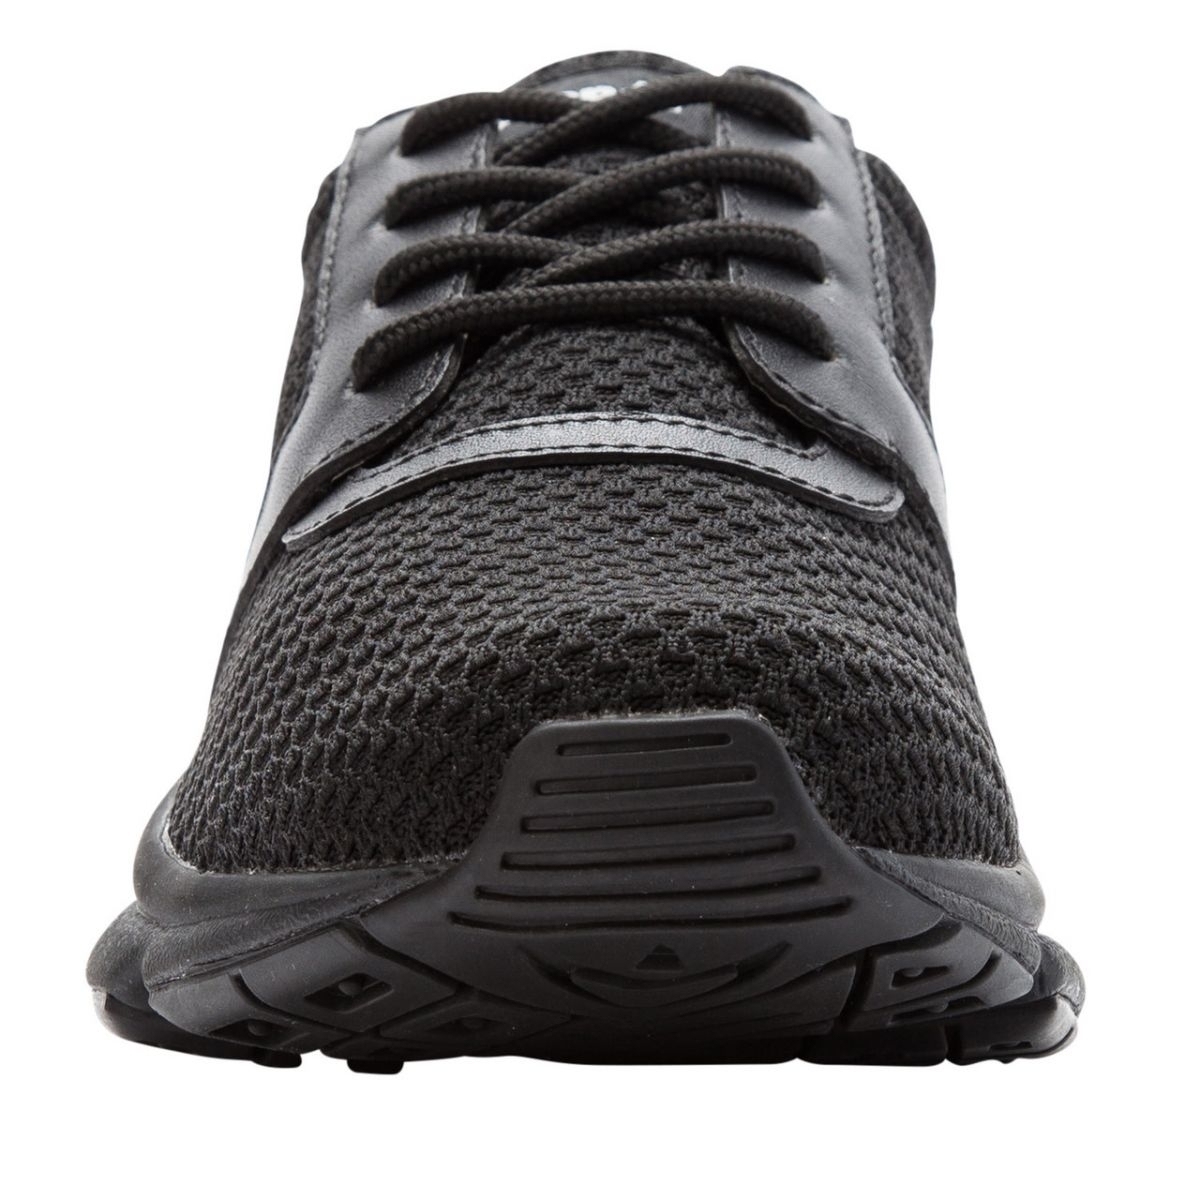 Propet Women's Stability X Walking Shoe Black - WAA032MBLK BLACK - BLACK, 10.5